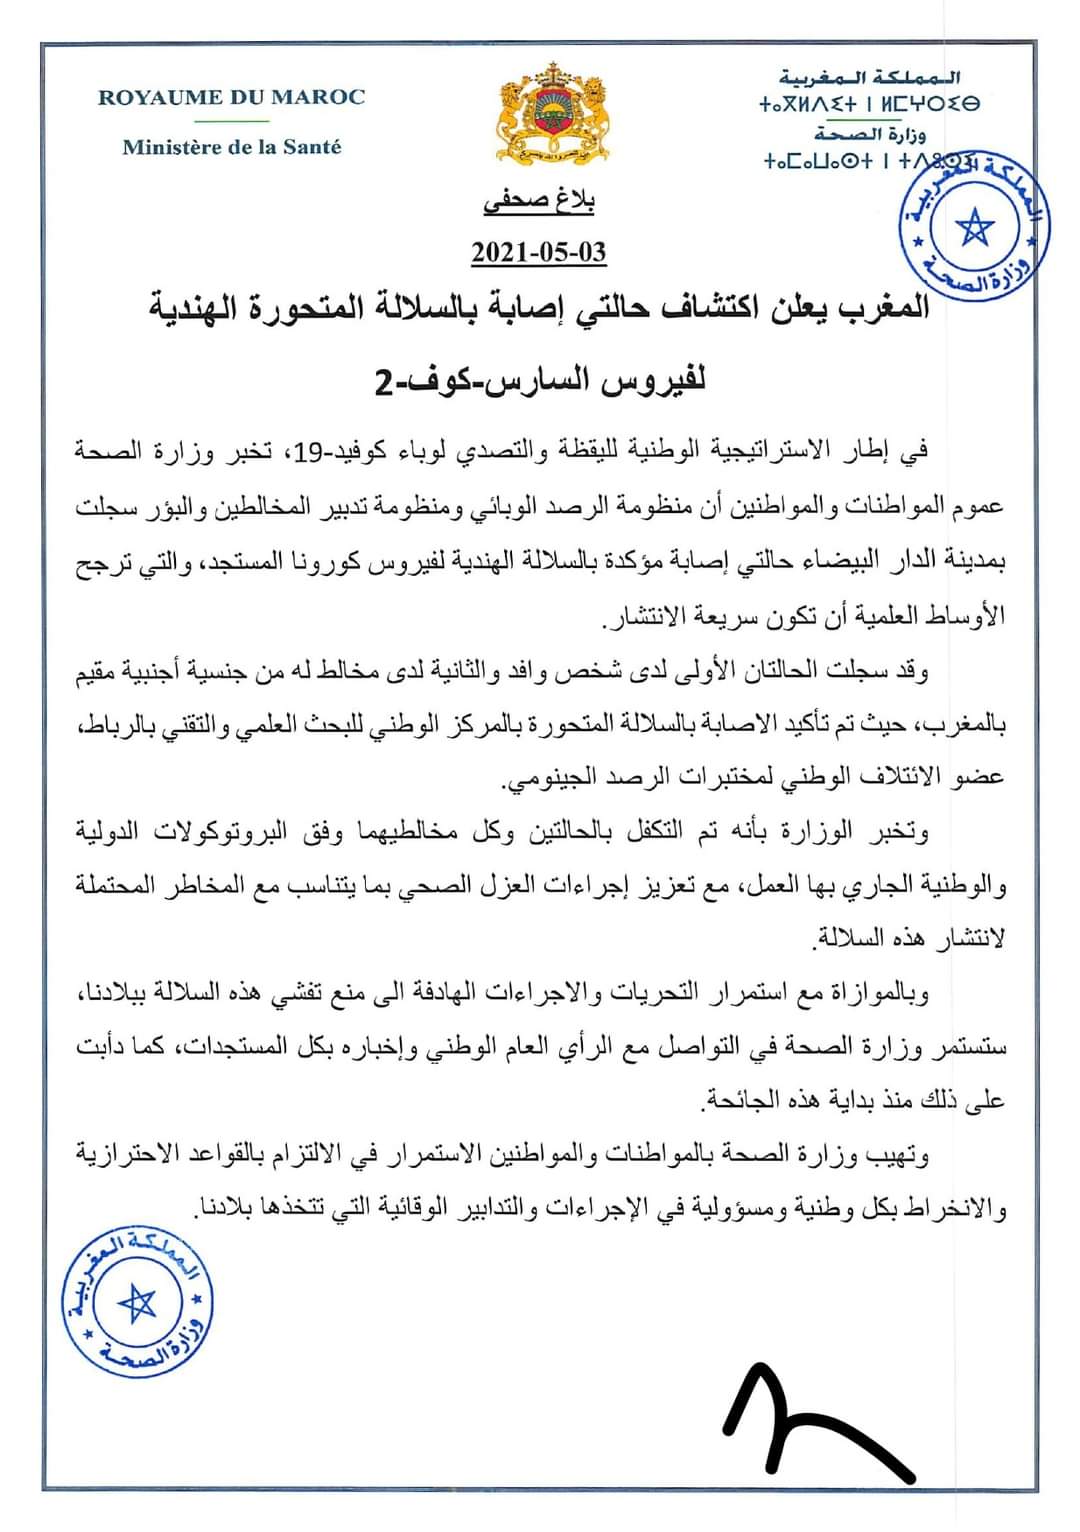 رسميا وزارة الصحة تعلن عن اكتشاف حالتي إصابة بالسلالة الهندية بمدينة الدار البيضاء كوفيد_19